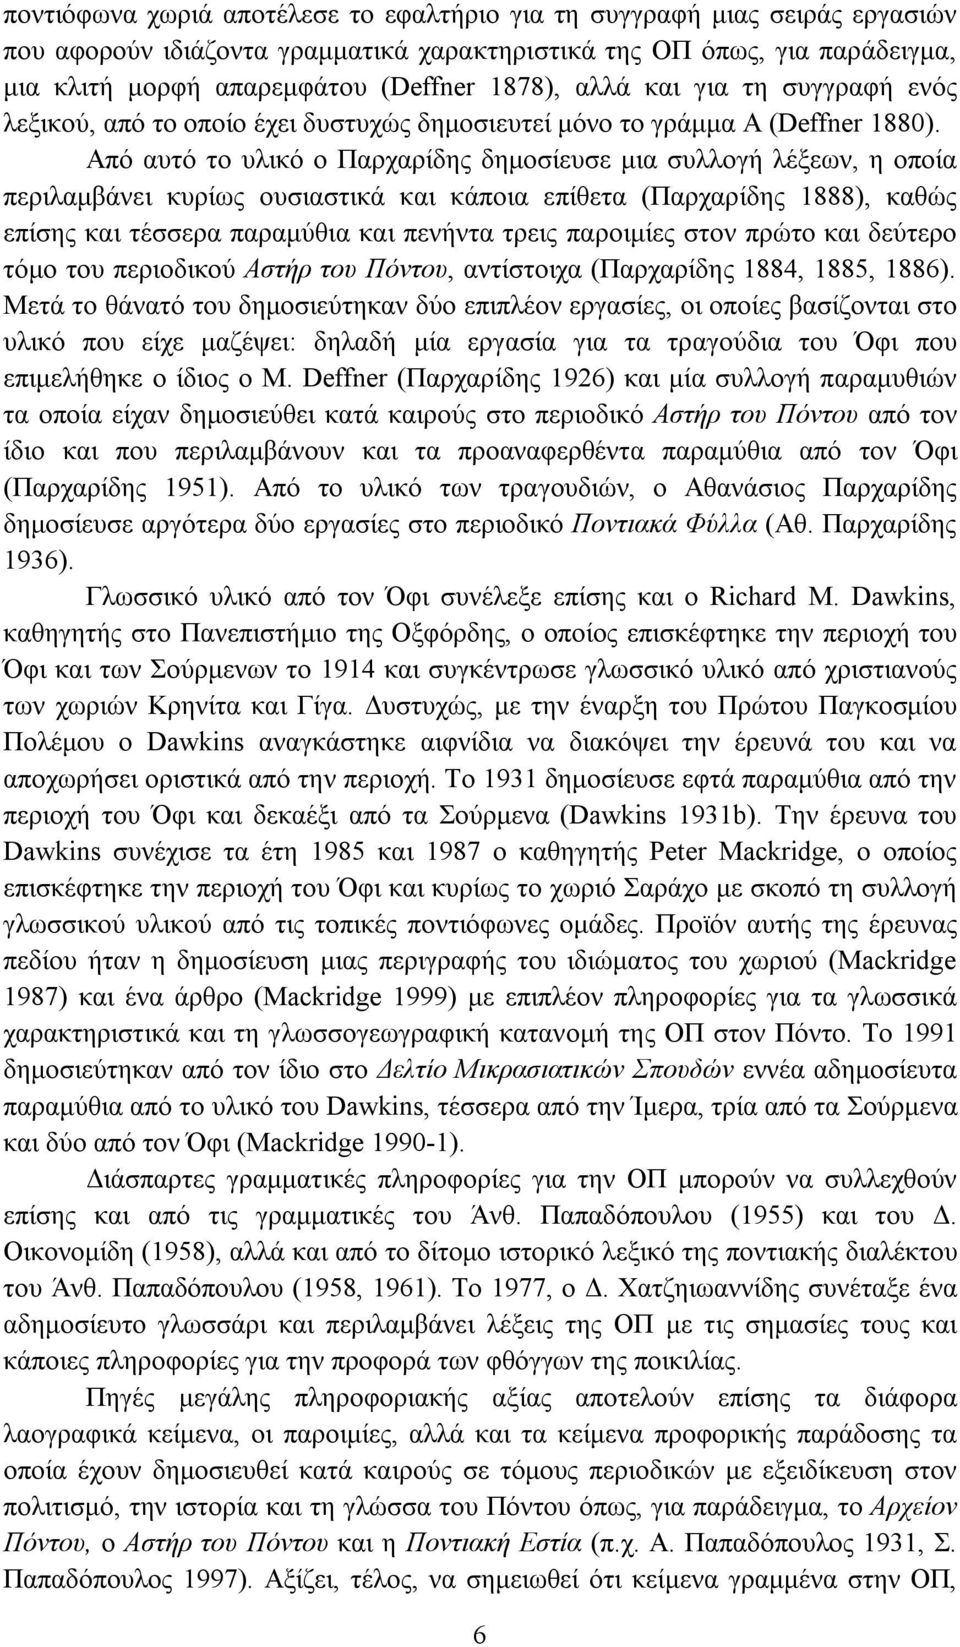 Από αυτό το υλικό ο Παρχαρίδης δημοσίευσε μια συλλογή λέξεων, η οποία περιλαμβάνει κυρίως ουσιαστικά και κάποια επίθετα (Παρχαρίδης 1888), καθώς επίσης και τέσσερα παραμύθια και πενήντα τρεις